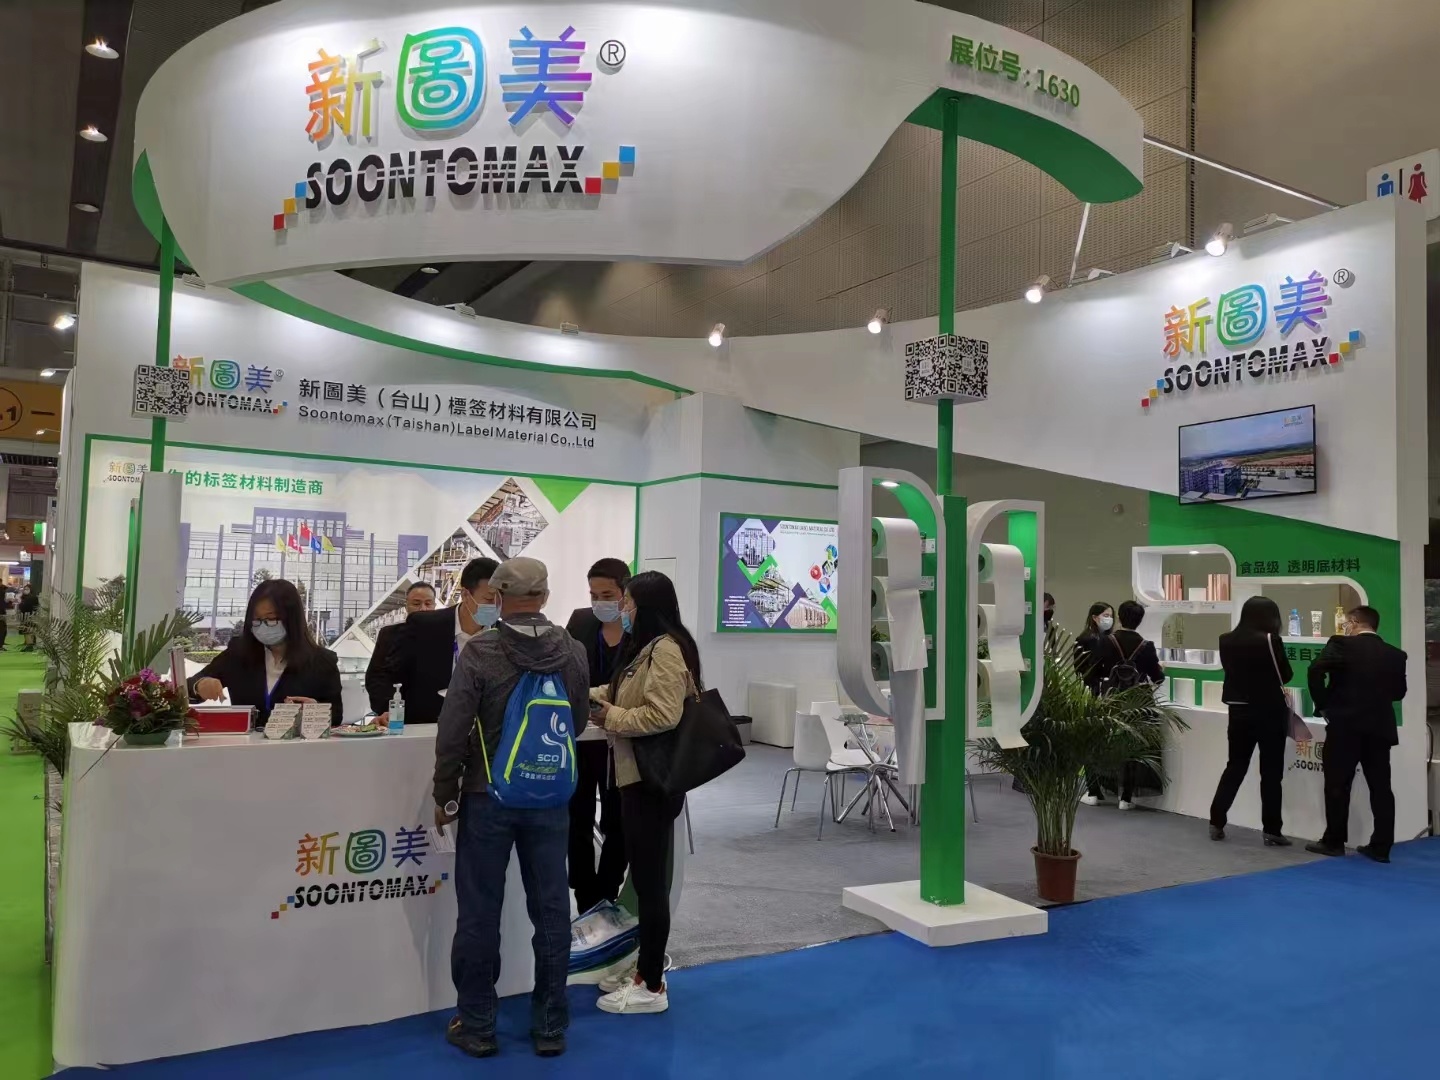 2021 Guangzhou South China Label Exhibition